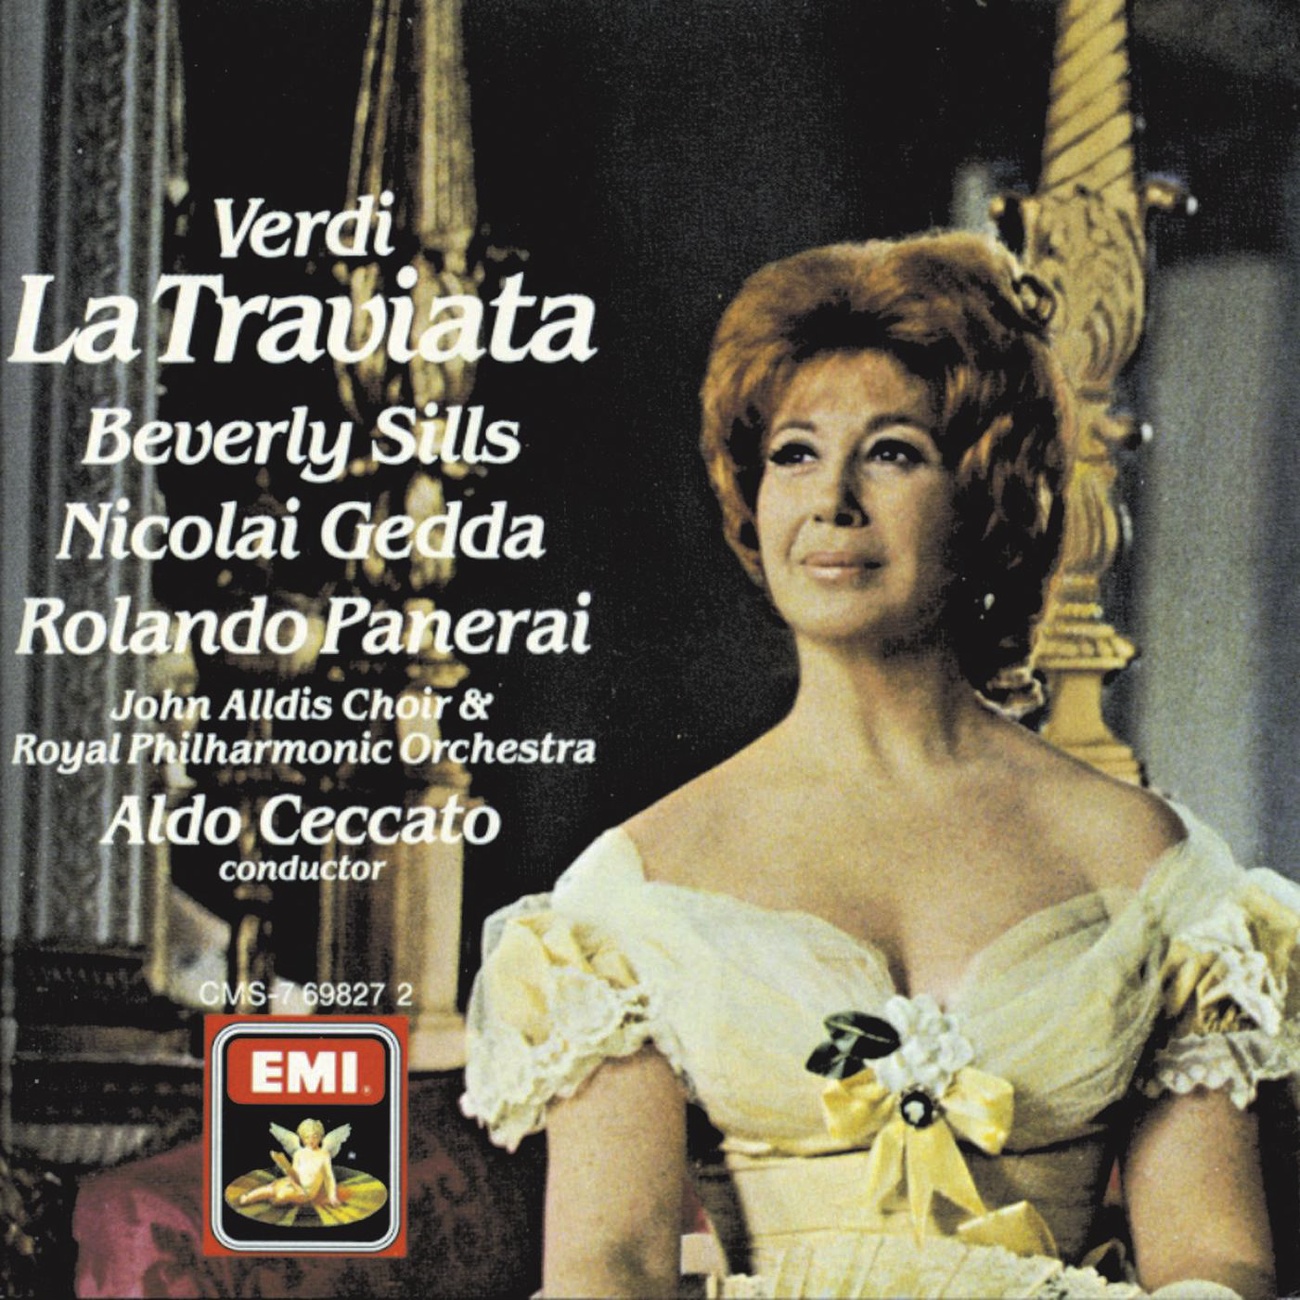 La Traviata 1988 Digital Remaster, Act III: Prendi, quest'e l' immagine.. Se una pudica vergine Violetta Germont Alfredo Dottor